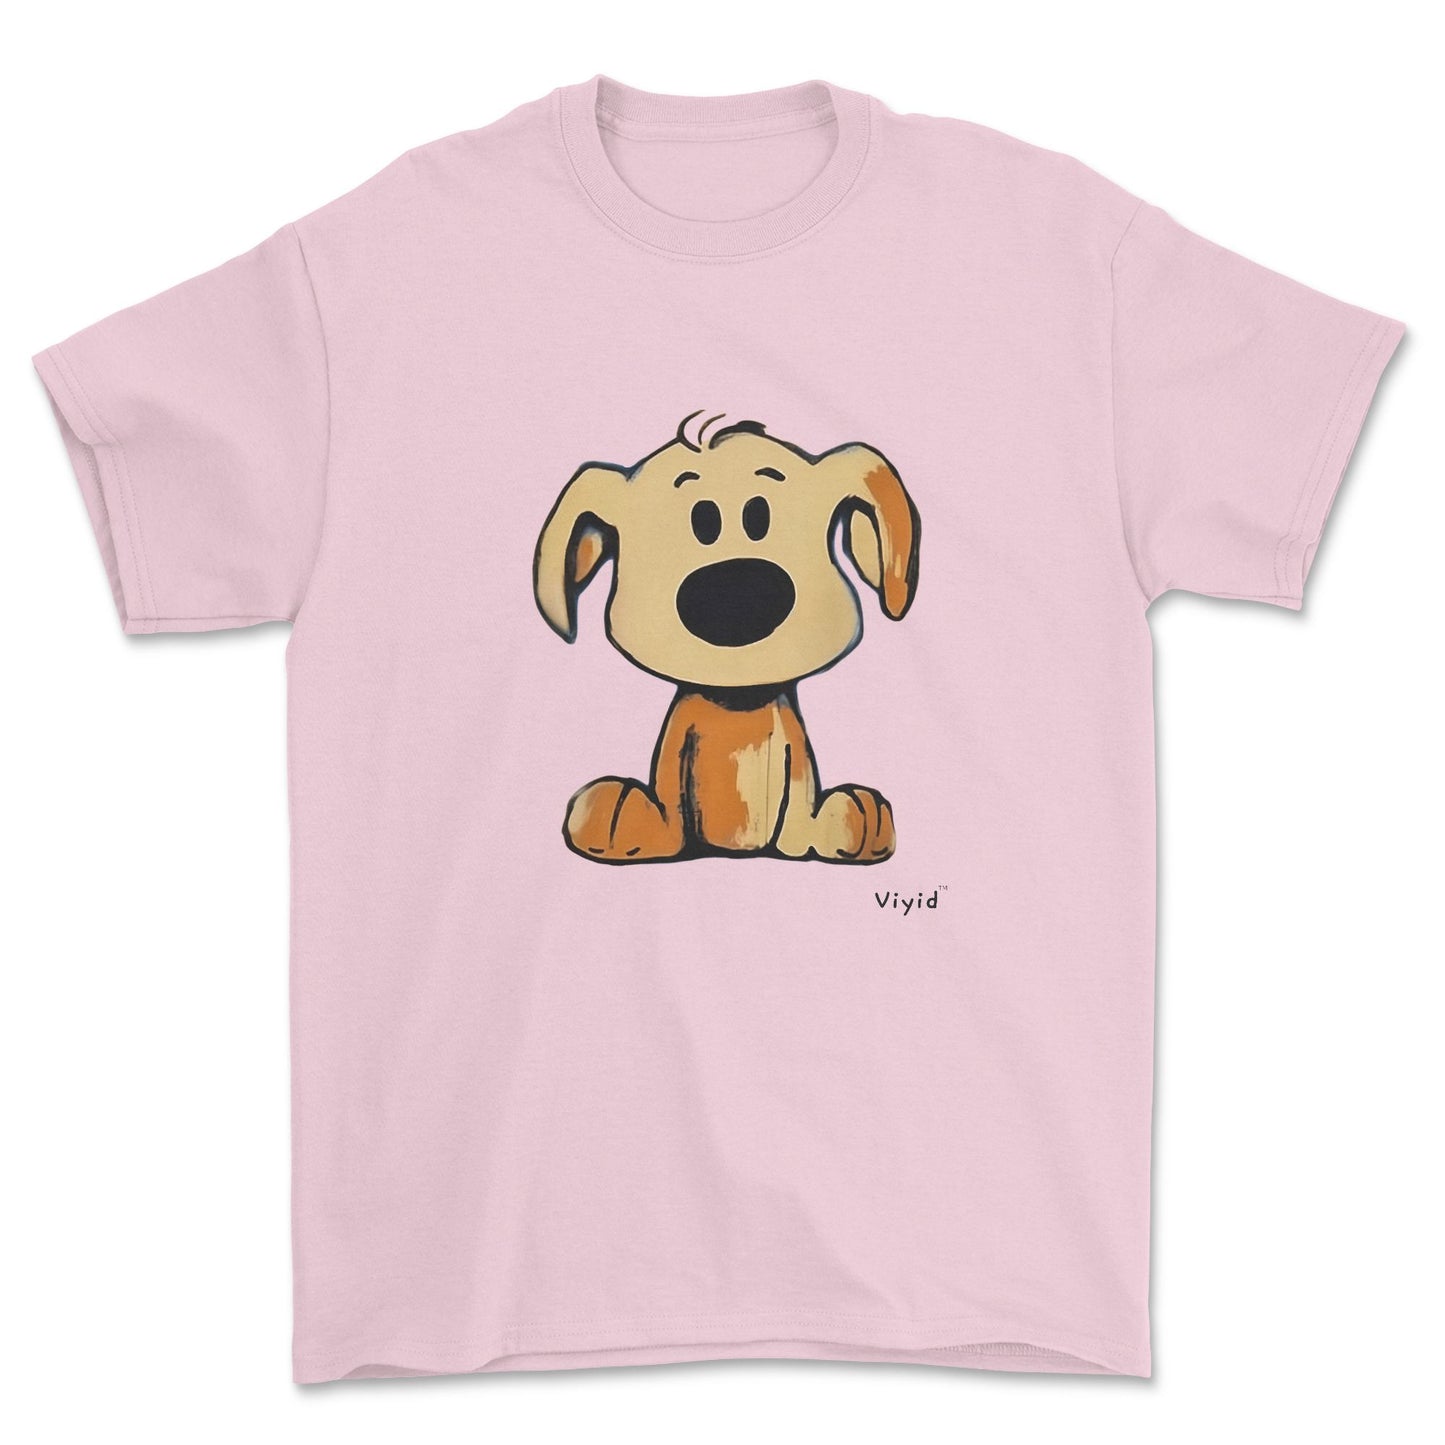 beagle cartoon dog adult t-shirt light pink